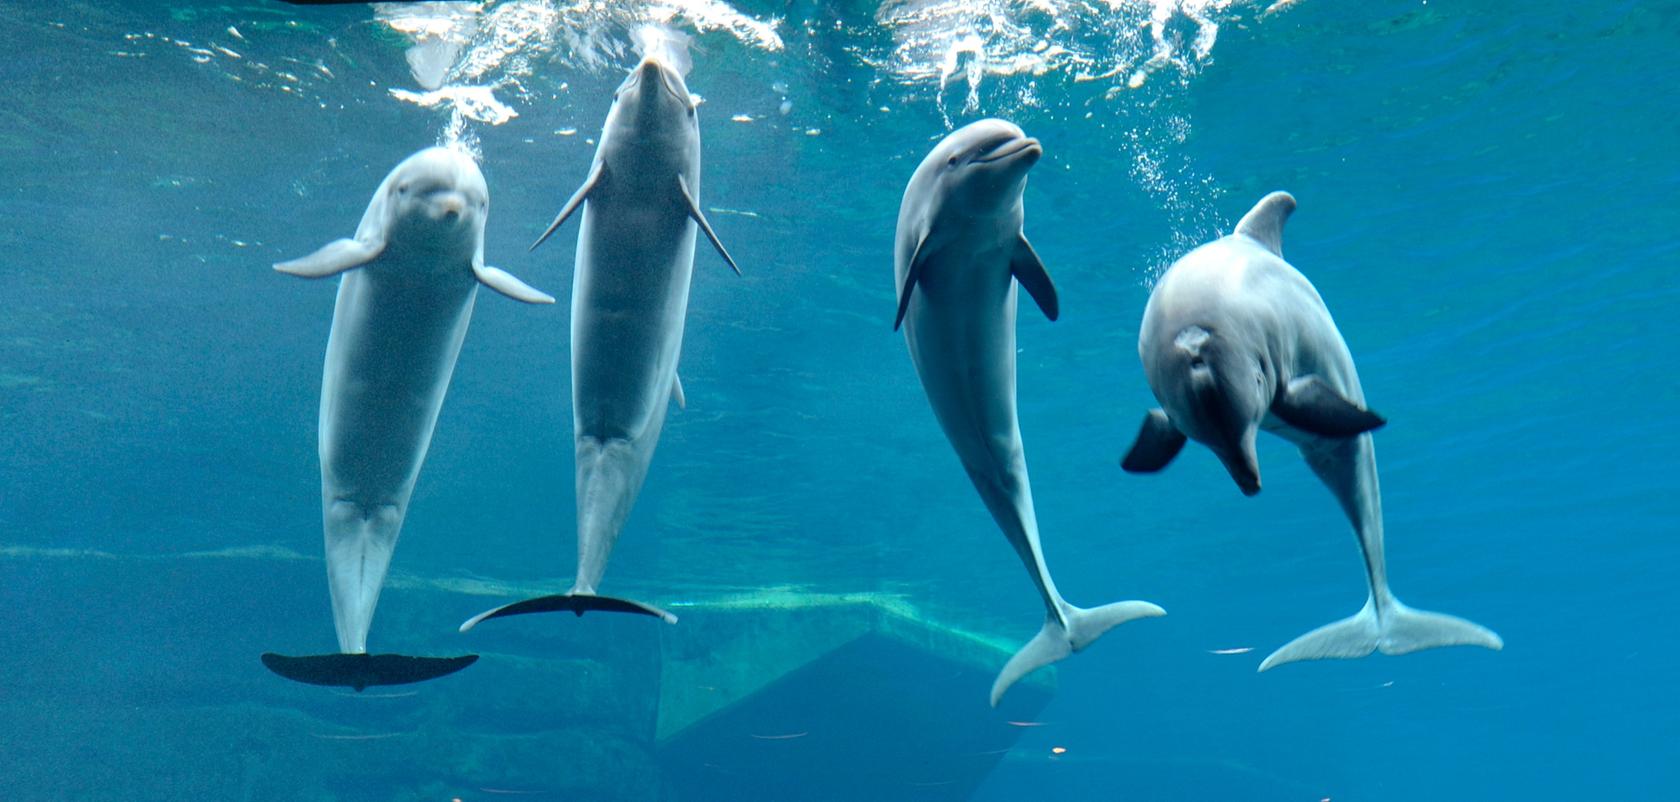 Die Grünen wollen einen Antrag in den Bundestag einbringen, der die Delfinhaltung in Deutschland verbieten soll.